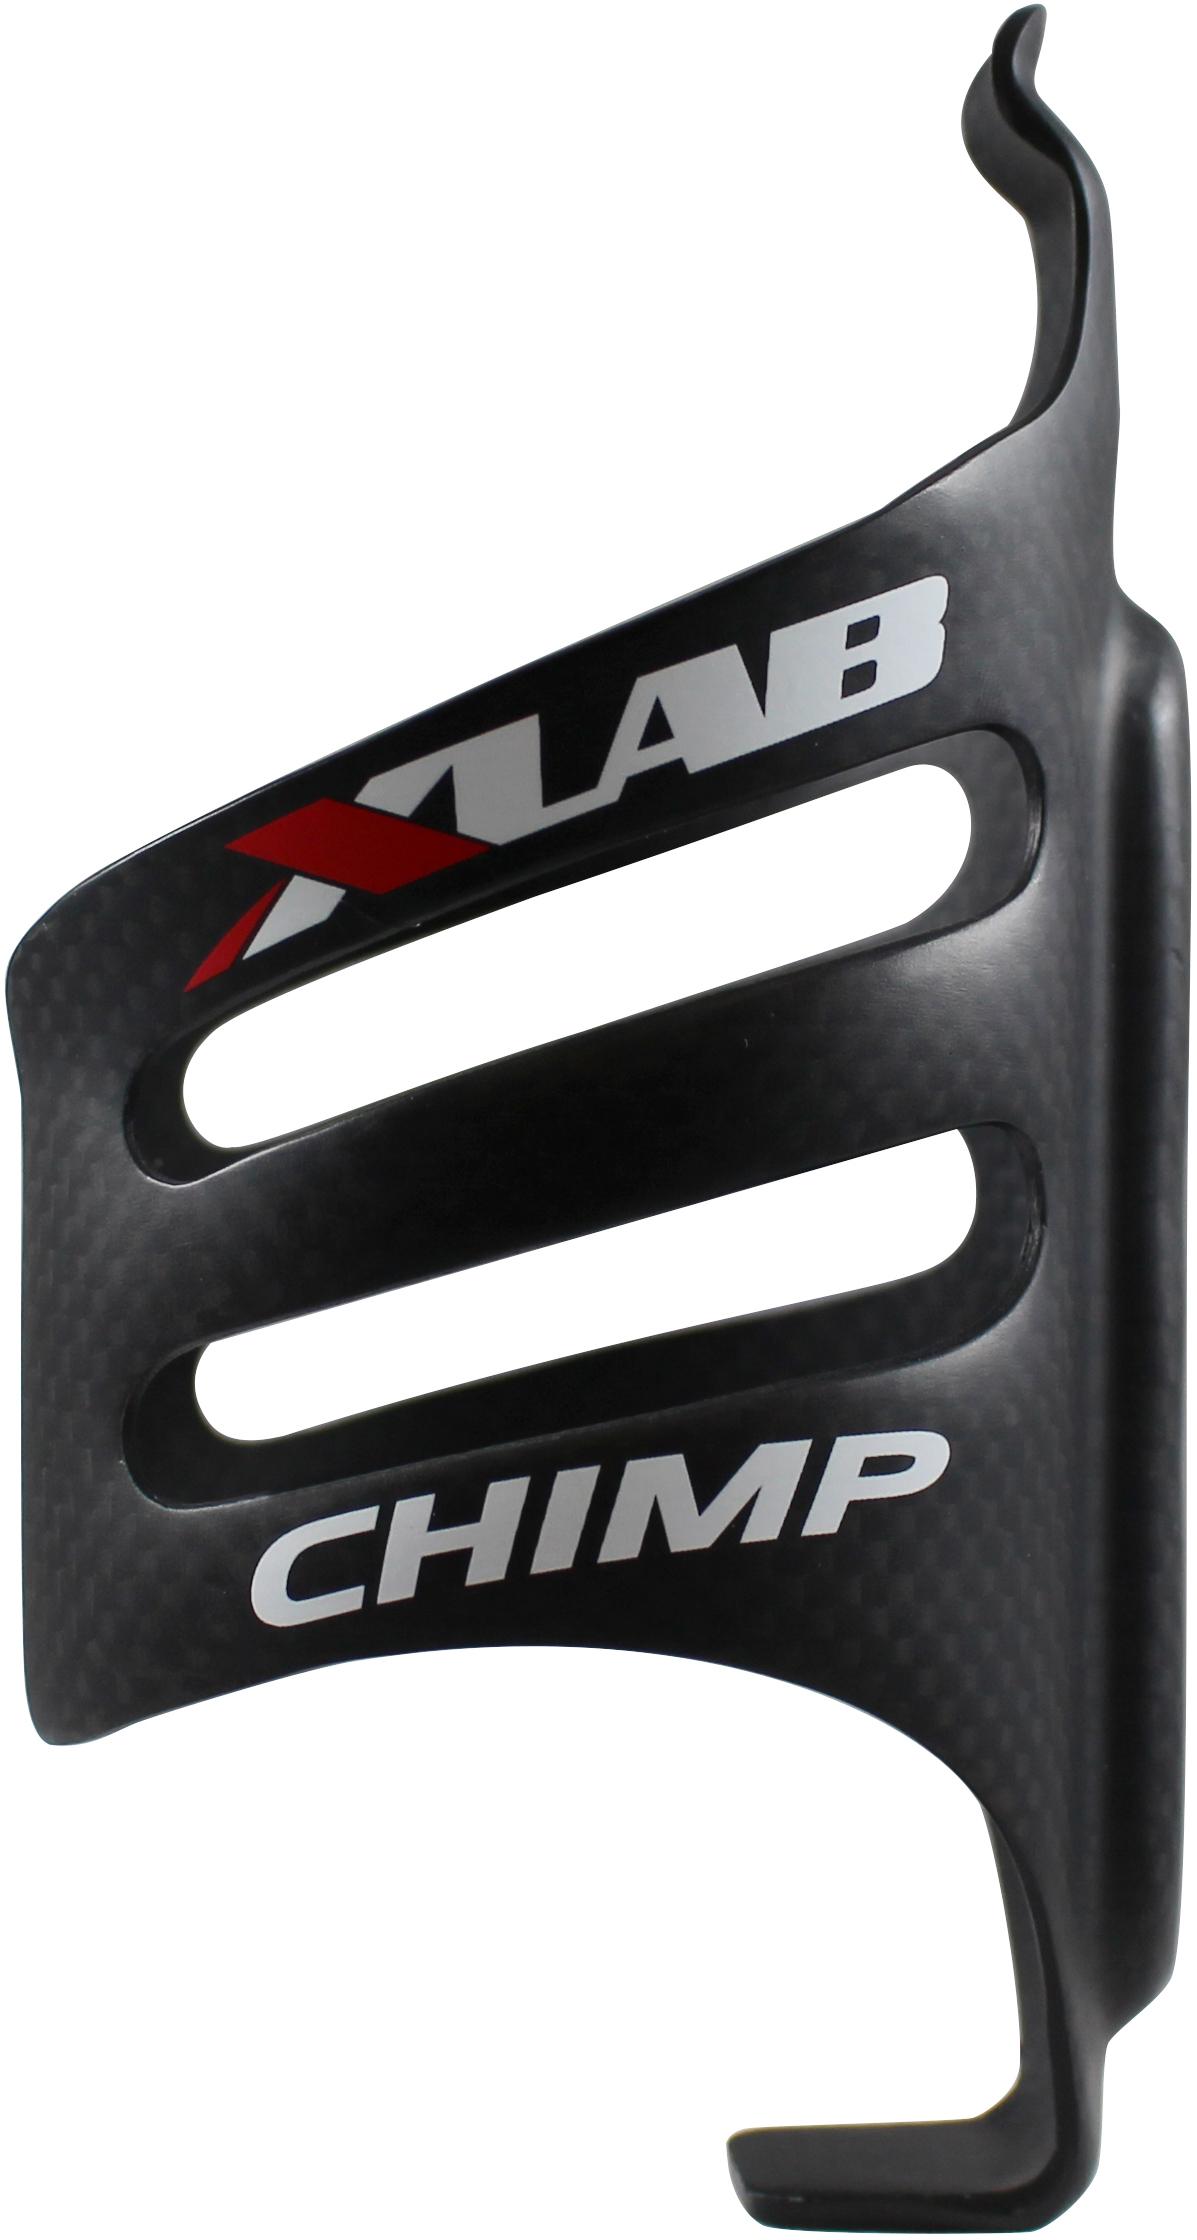 XLAB Chimp Carbon Bottle Cage - Matte Black